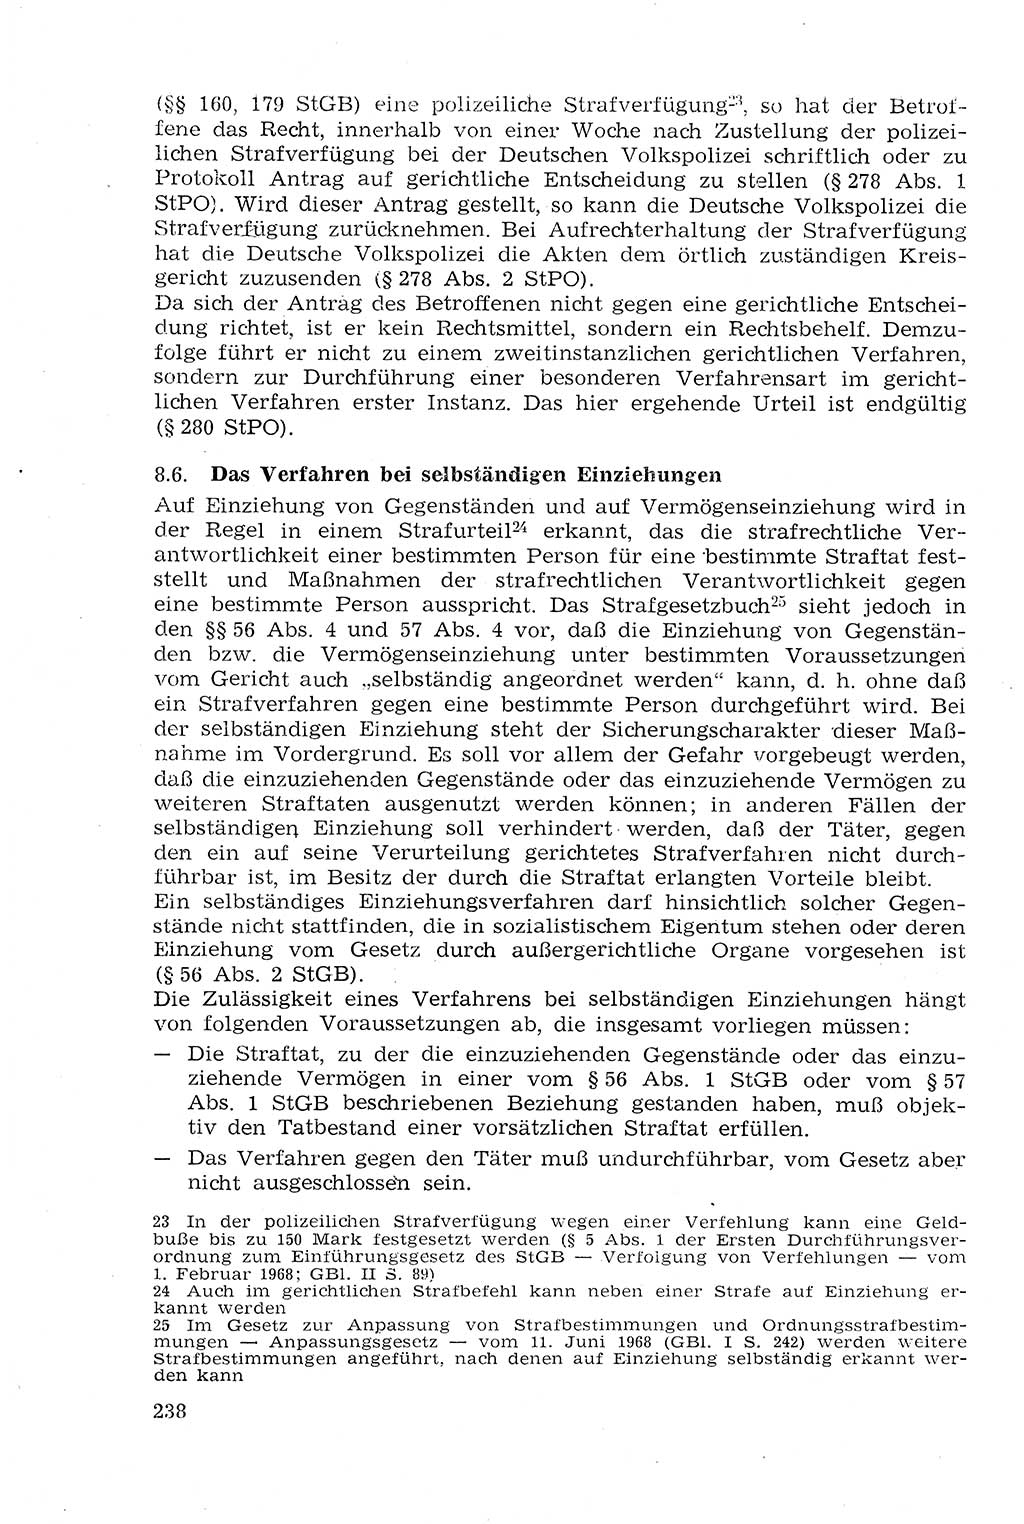 Strafprozeßrecht der DDR (Deutsche Demokratische Republik), Lehrmaterial 1969, Seite 238 (Strafprozeßr. DDR Lehrmat. 1969, S. 238)